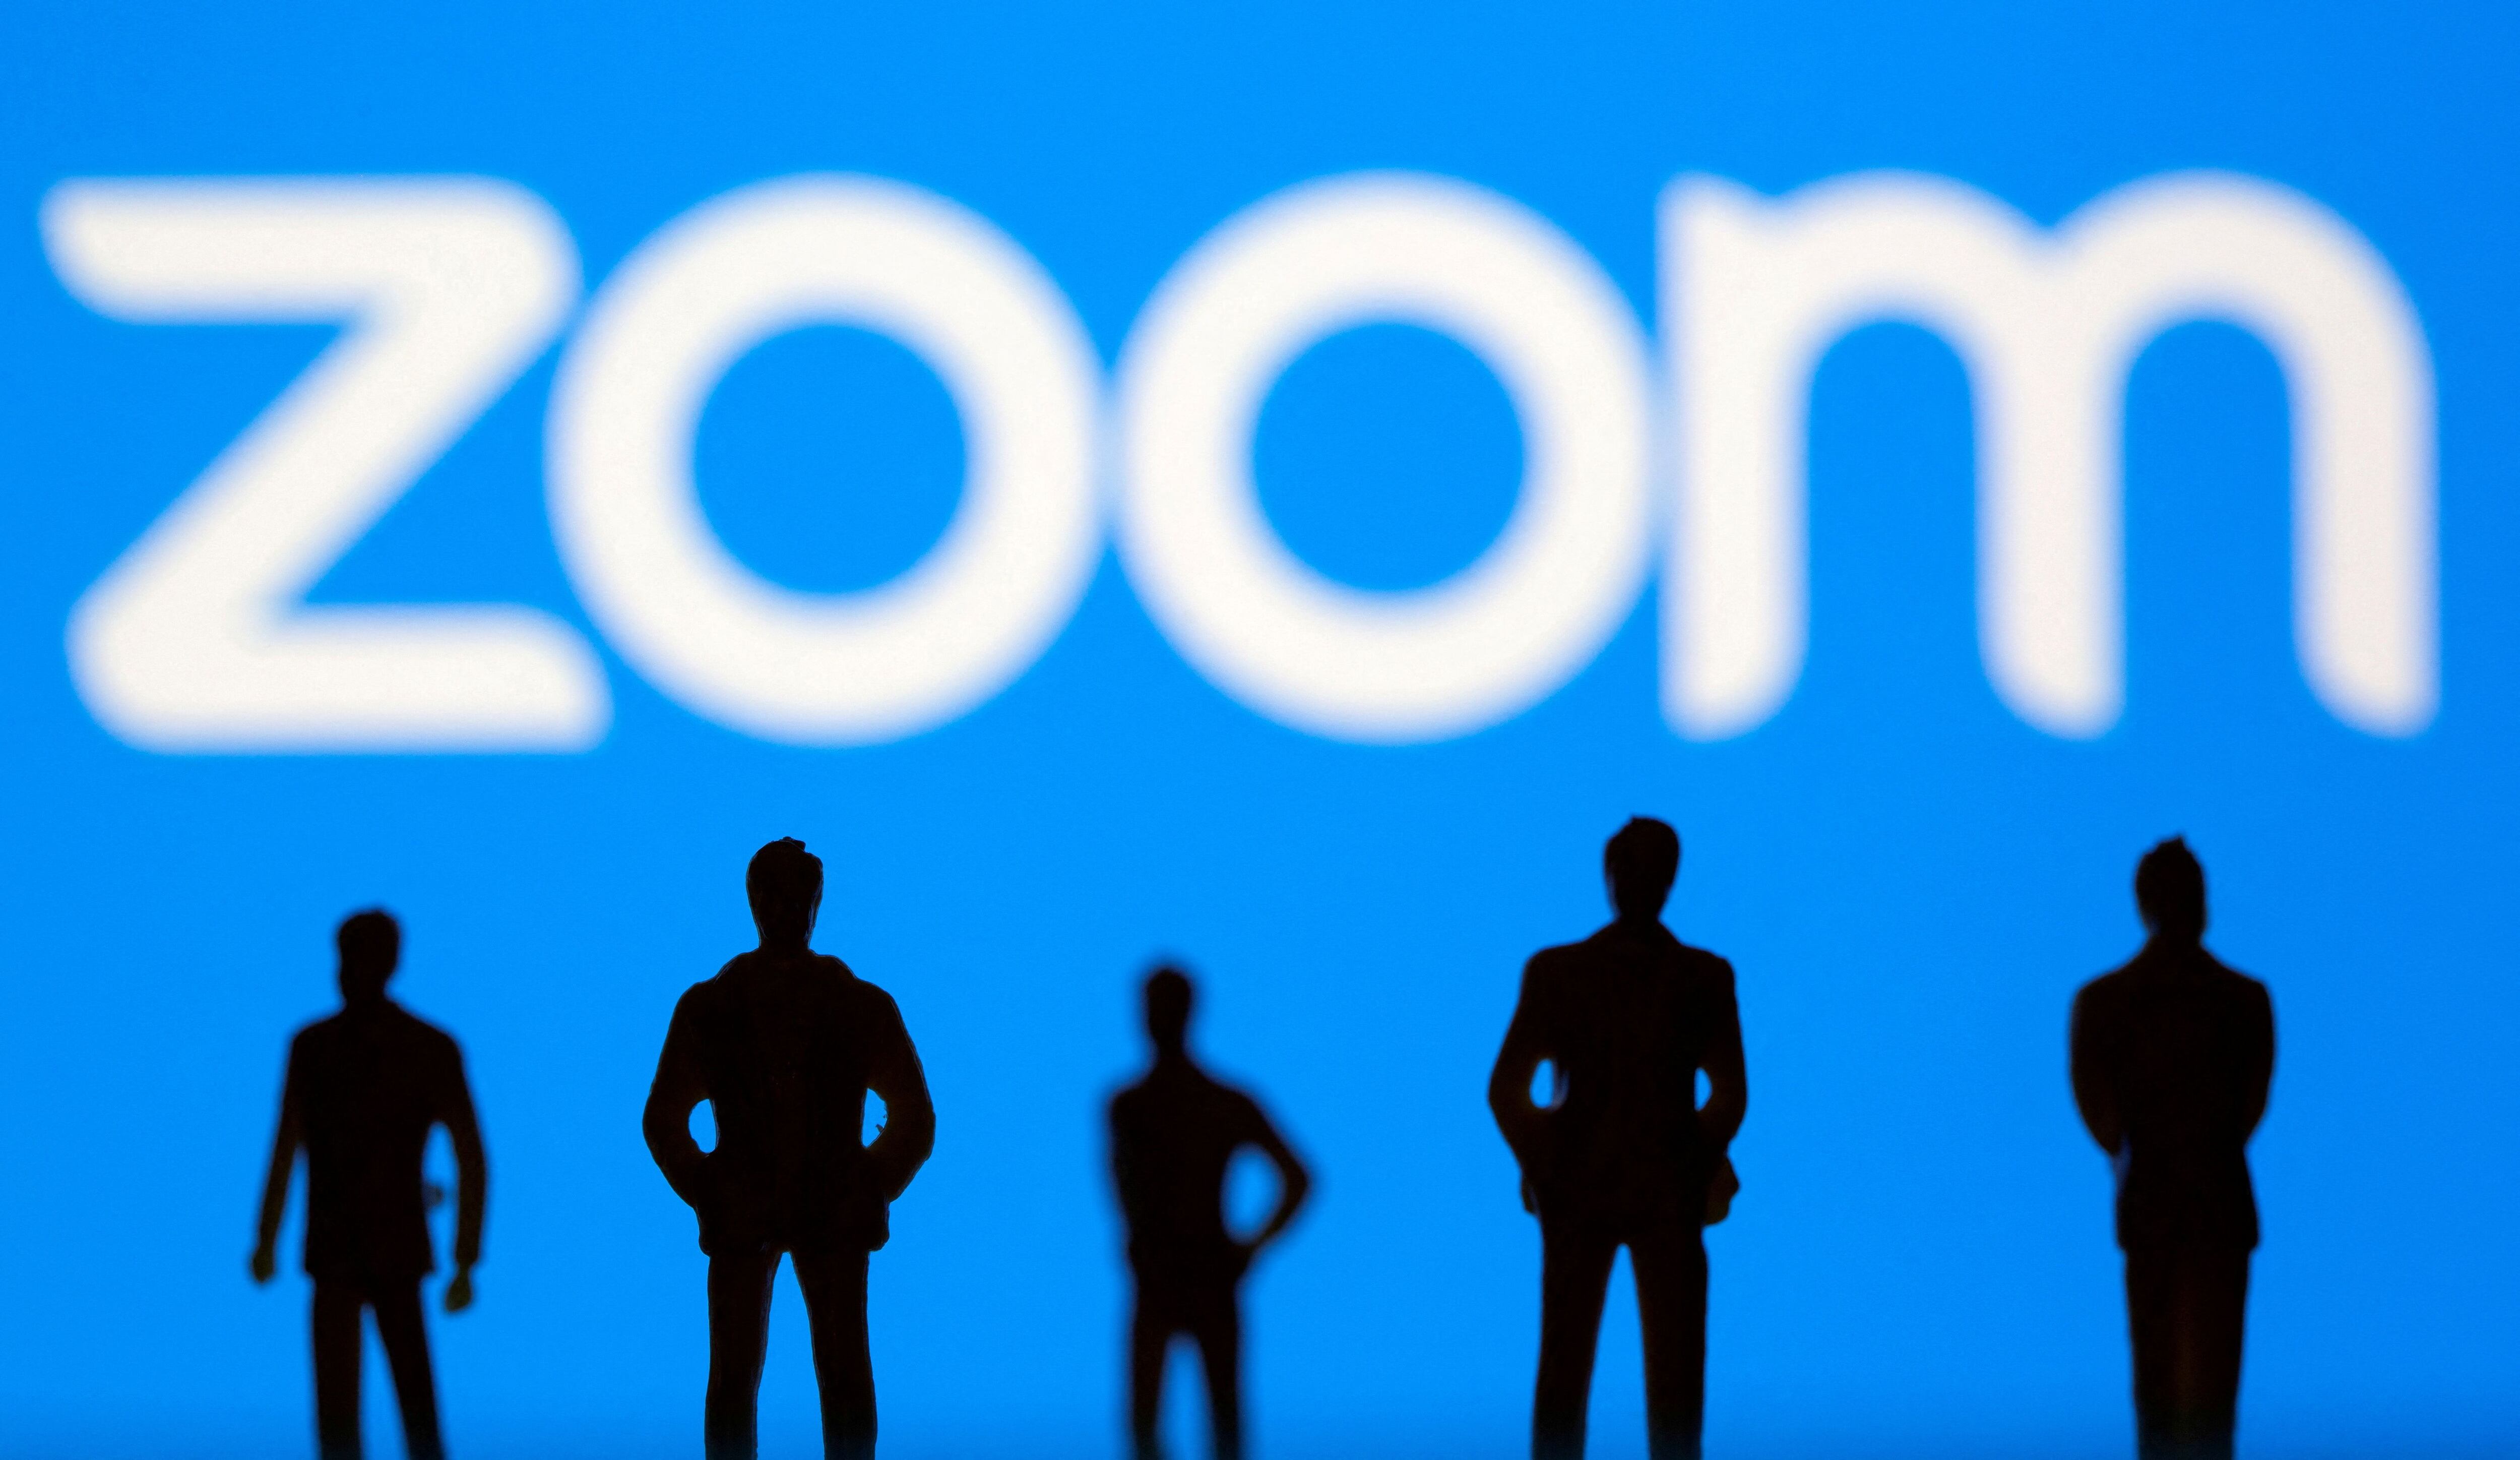 Zoom le dará a los usuarios la posibilidad de cambiar el diseño de la plataforma y nuevos fondos para sus llamadas. (REUTERS)